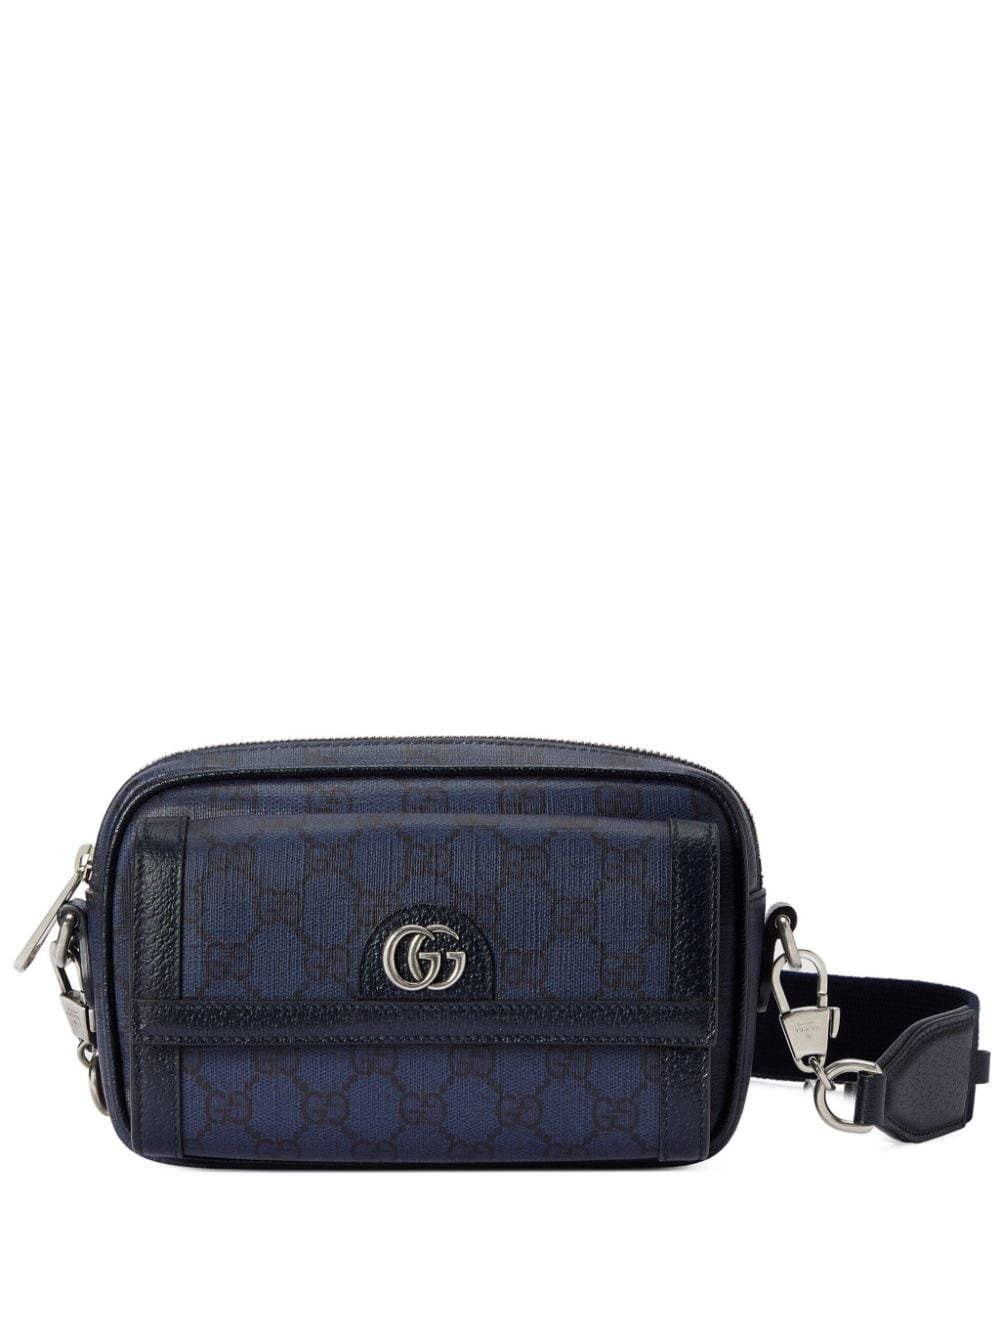 Gucci Belt Bag for Men